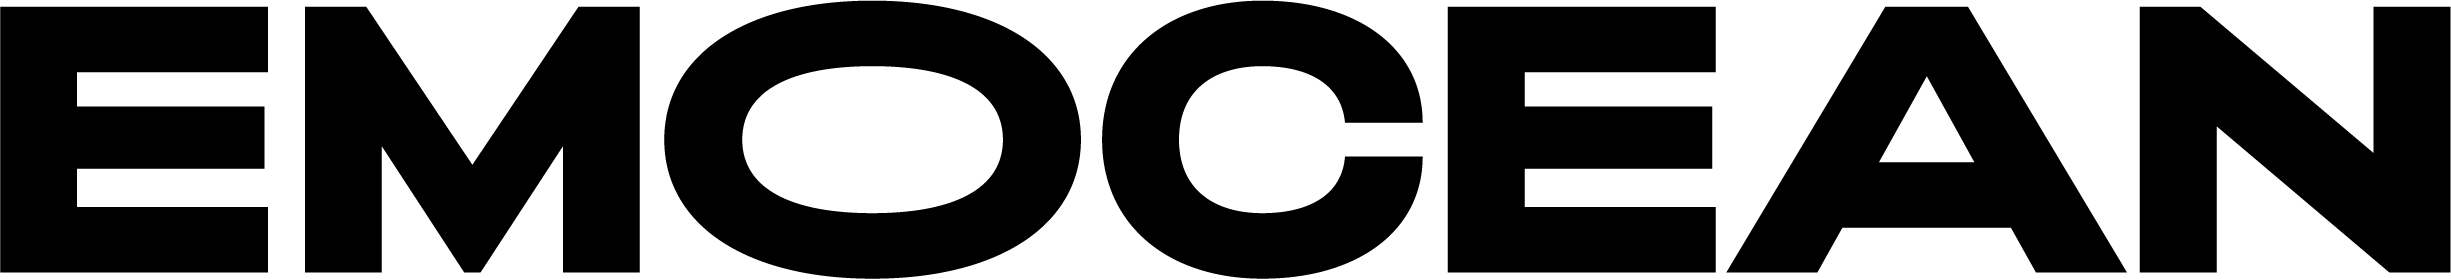 EMOCEAN logo